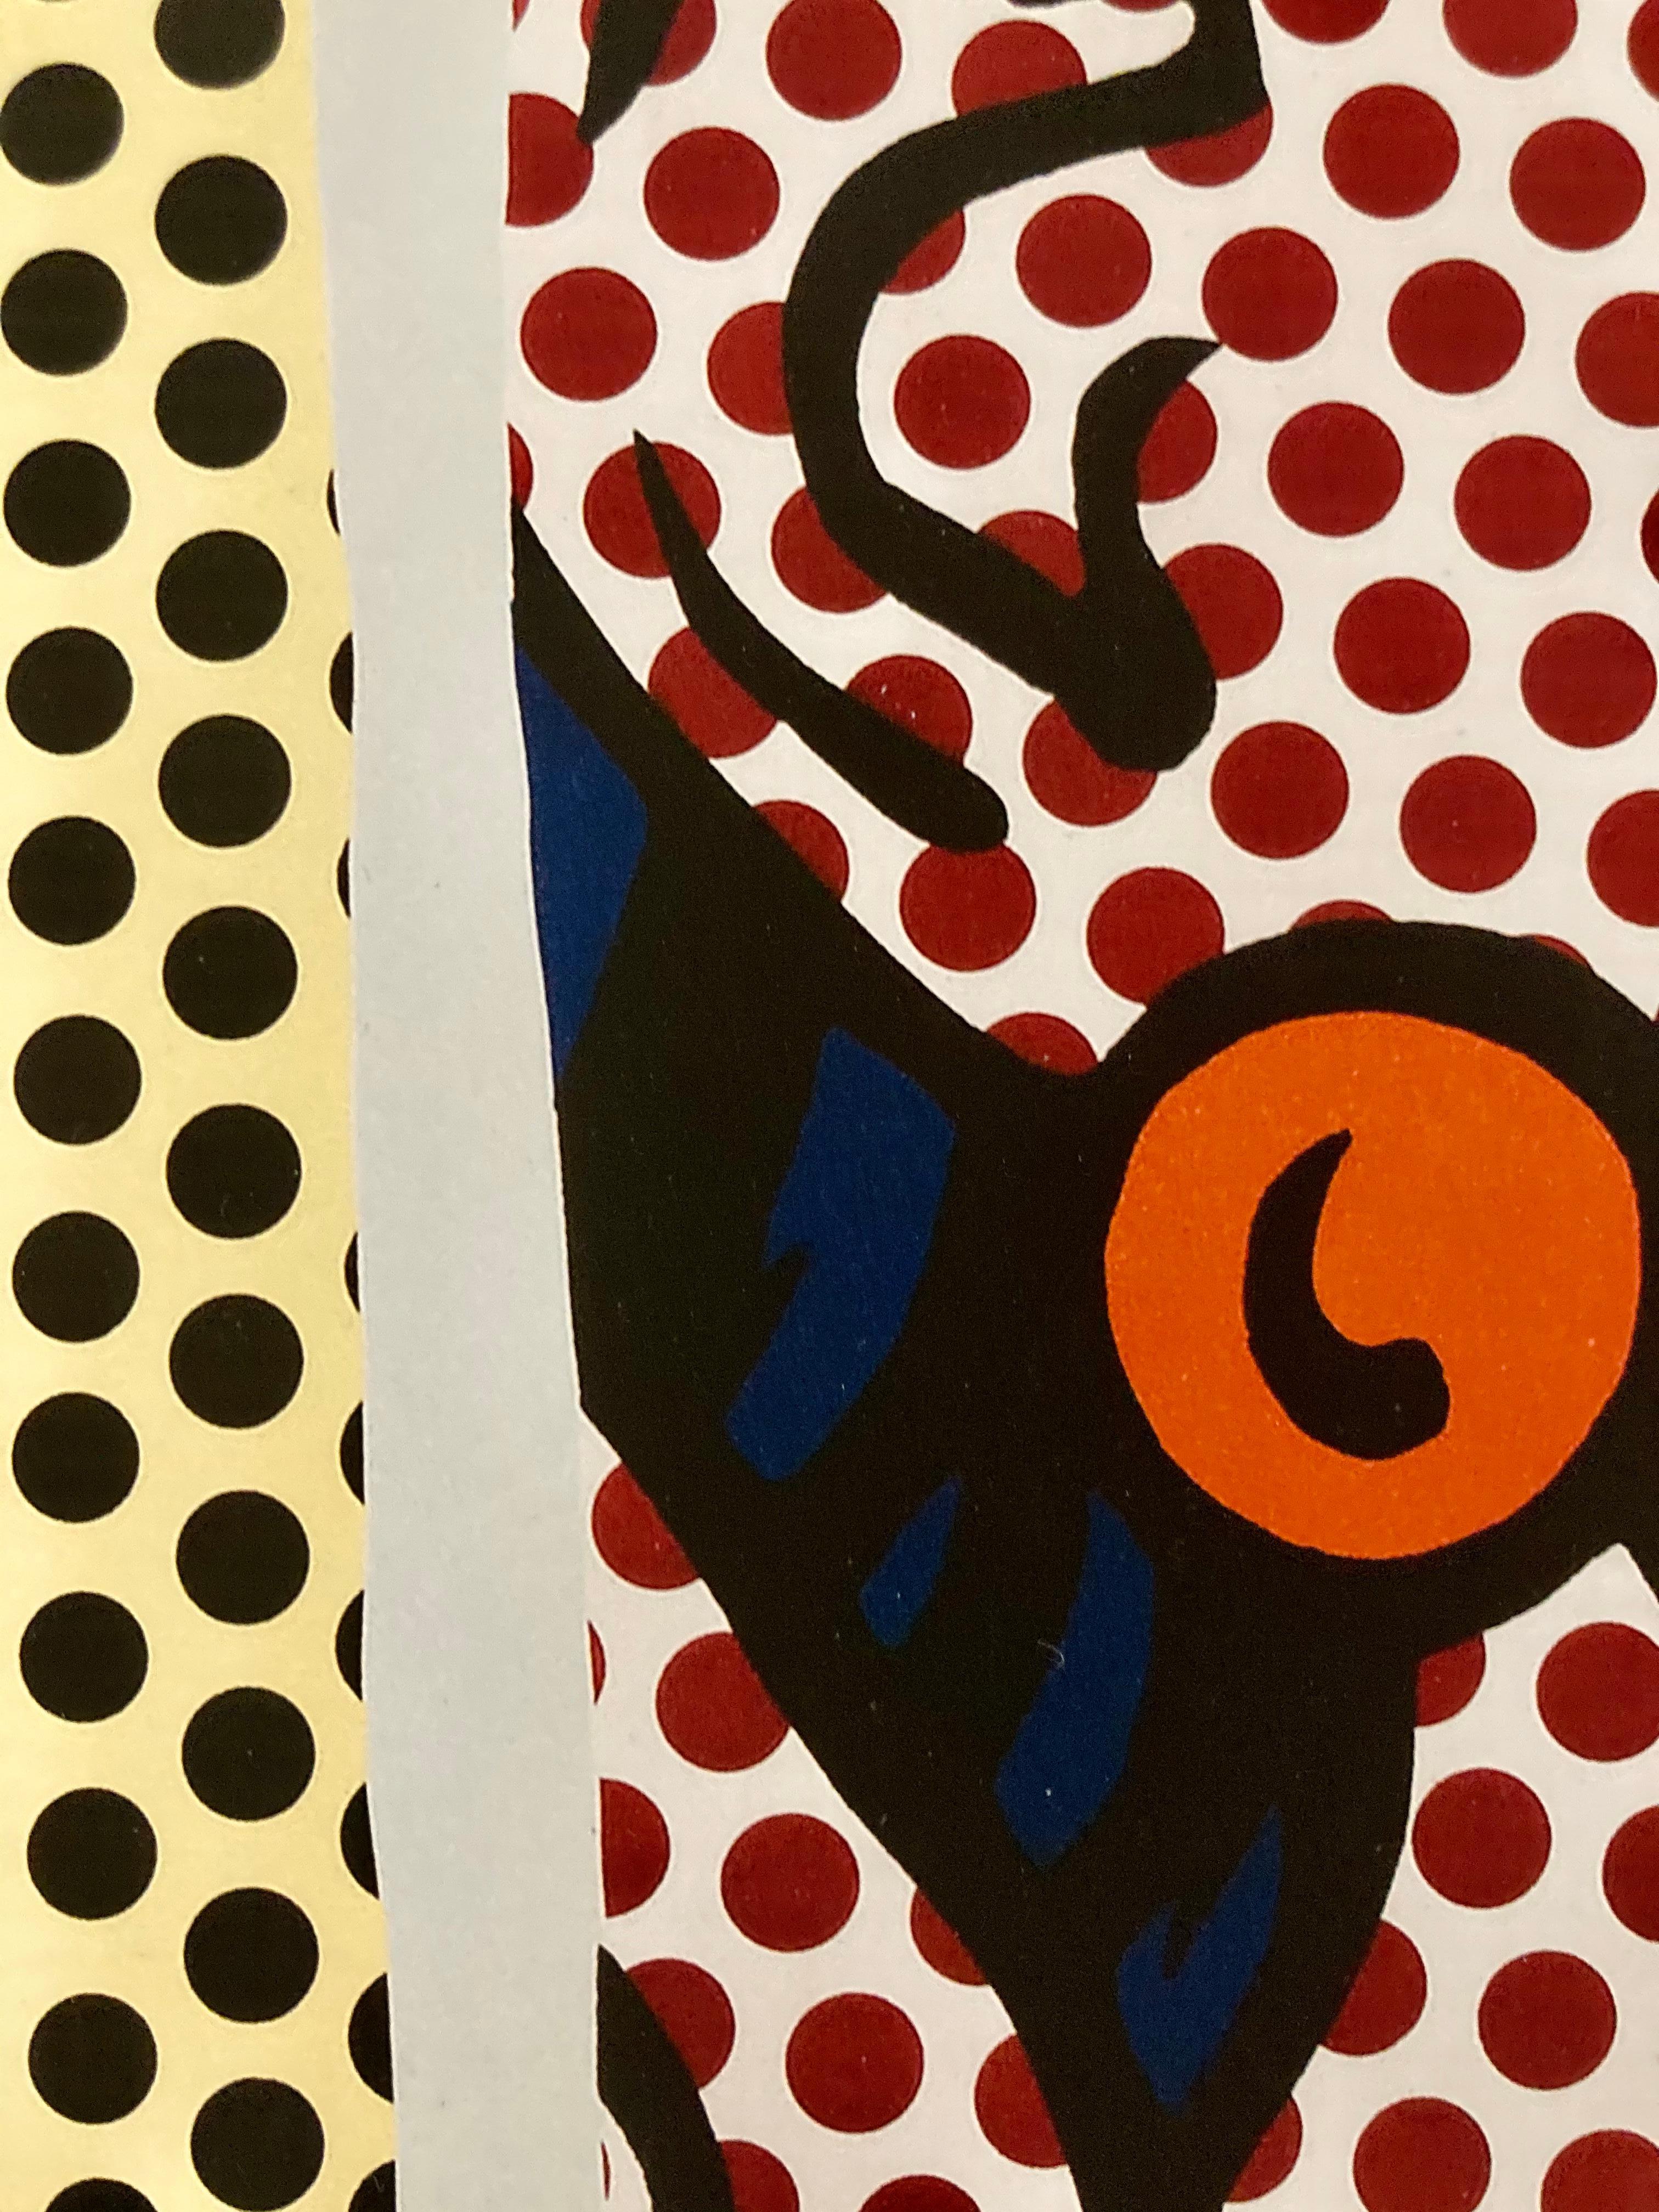 Un tirage d'art Hahnemuehle, attribué à Roy Lichtenstein. Édition 25.